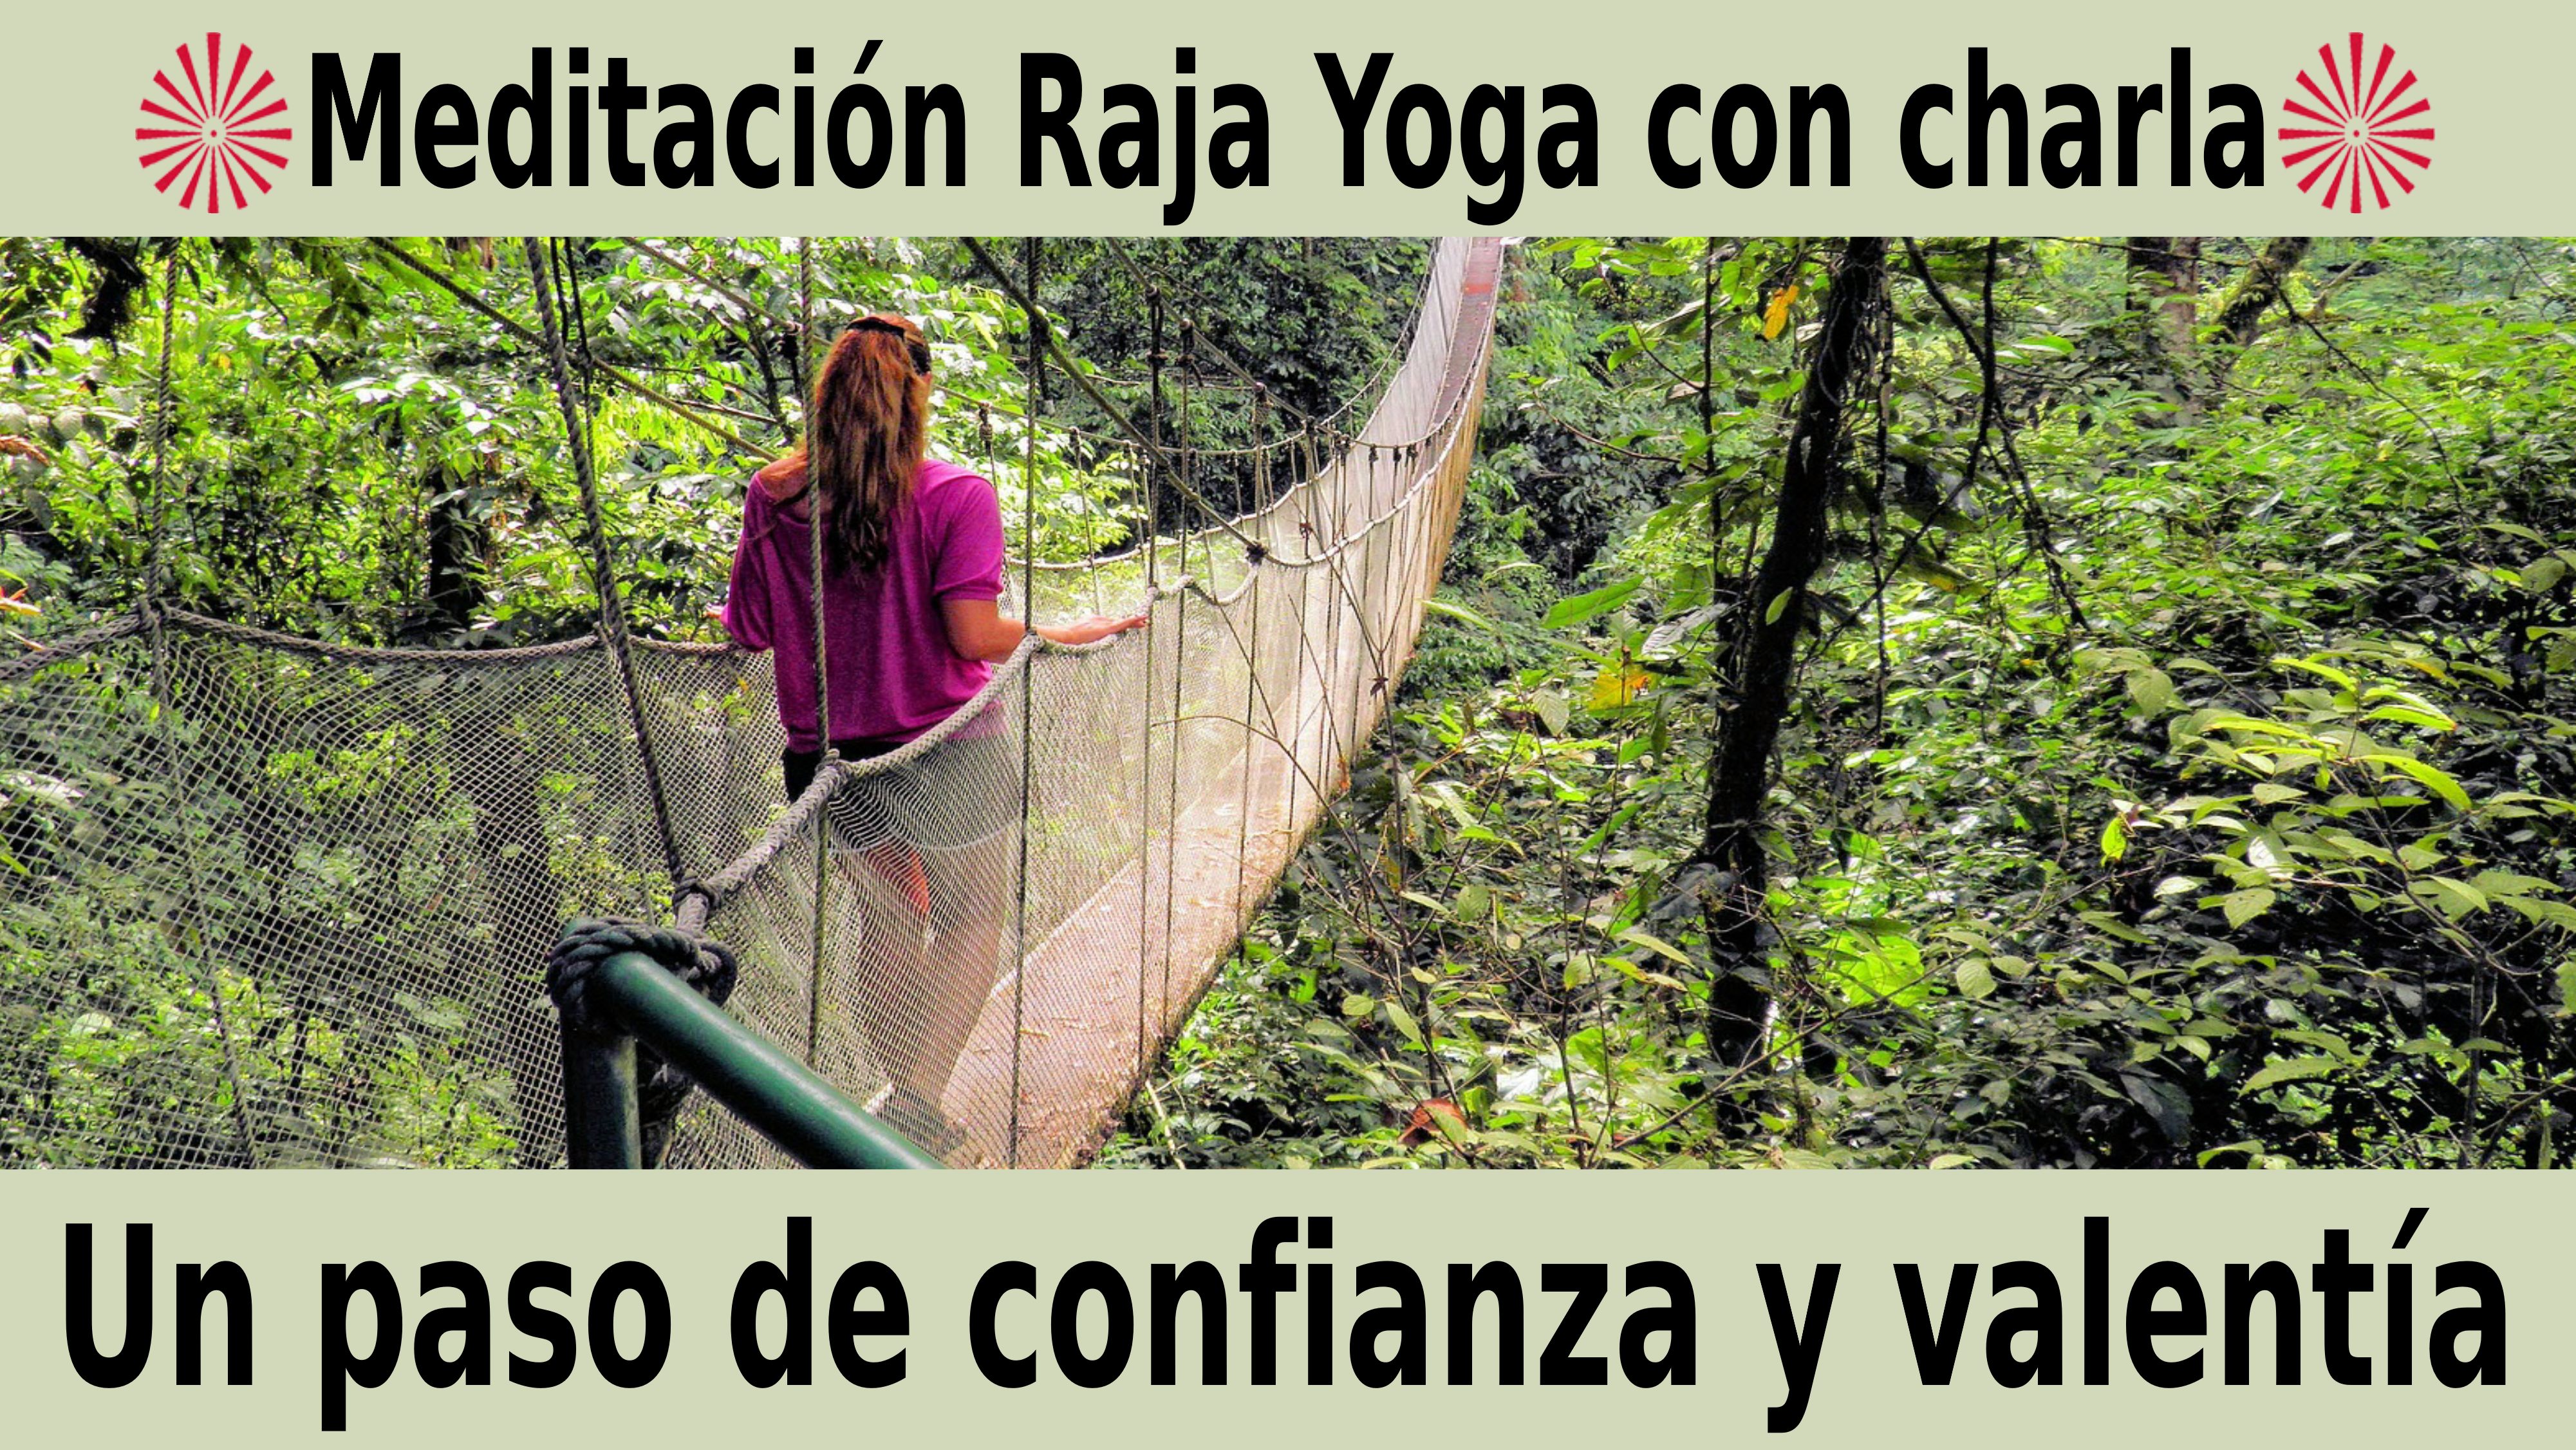 Meditación Raja Yoga con charla:  Un paso de confianza y valentía (11 Noviembre 2020) On-line desde Sevilla